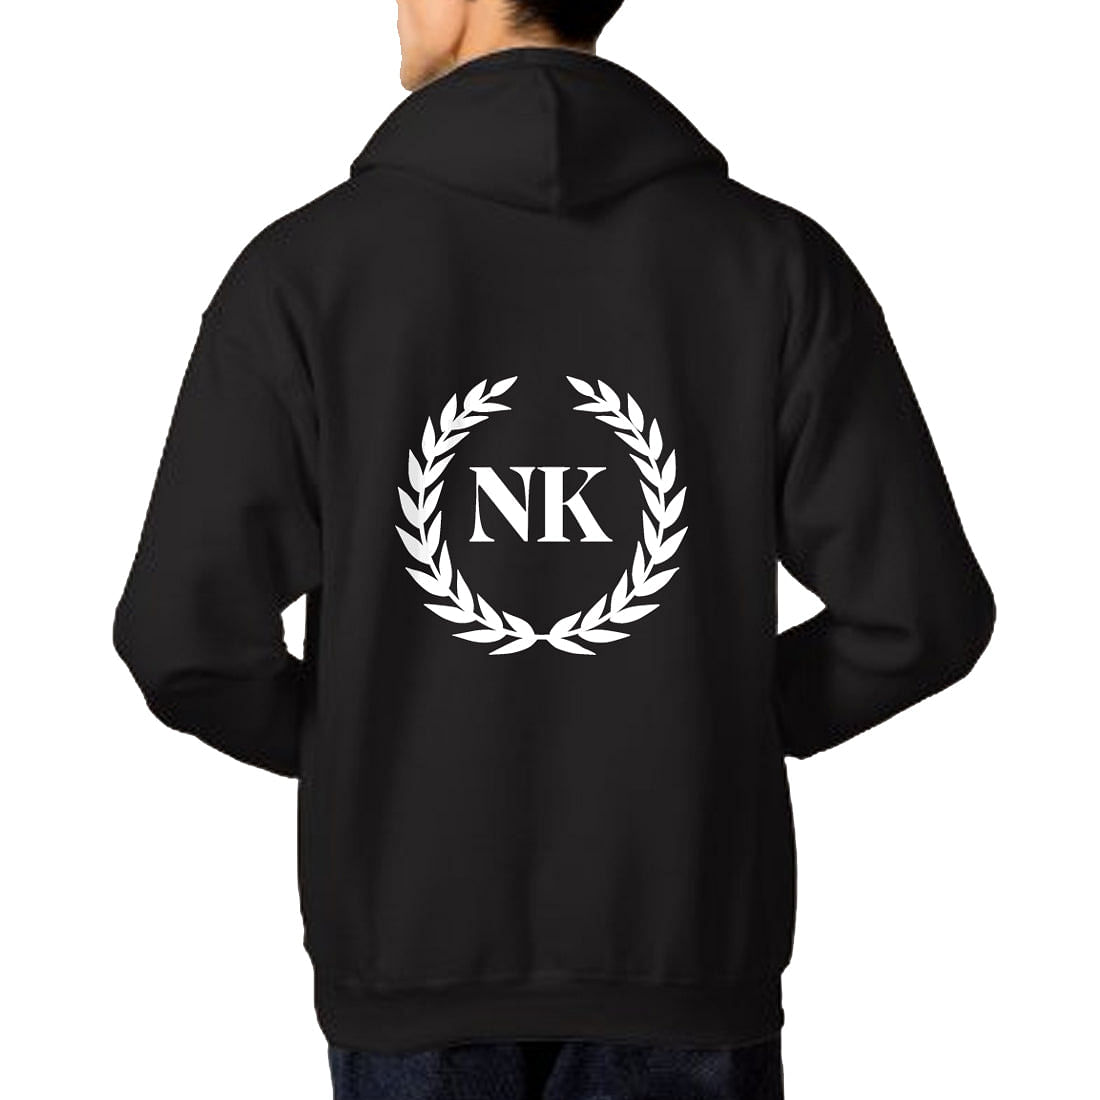 Nutcase Customized Black Hoodie hoodies for Men Women-Add Text Nutcase